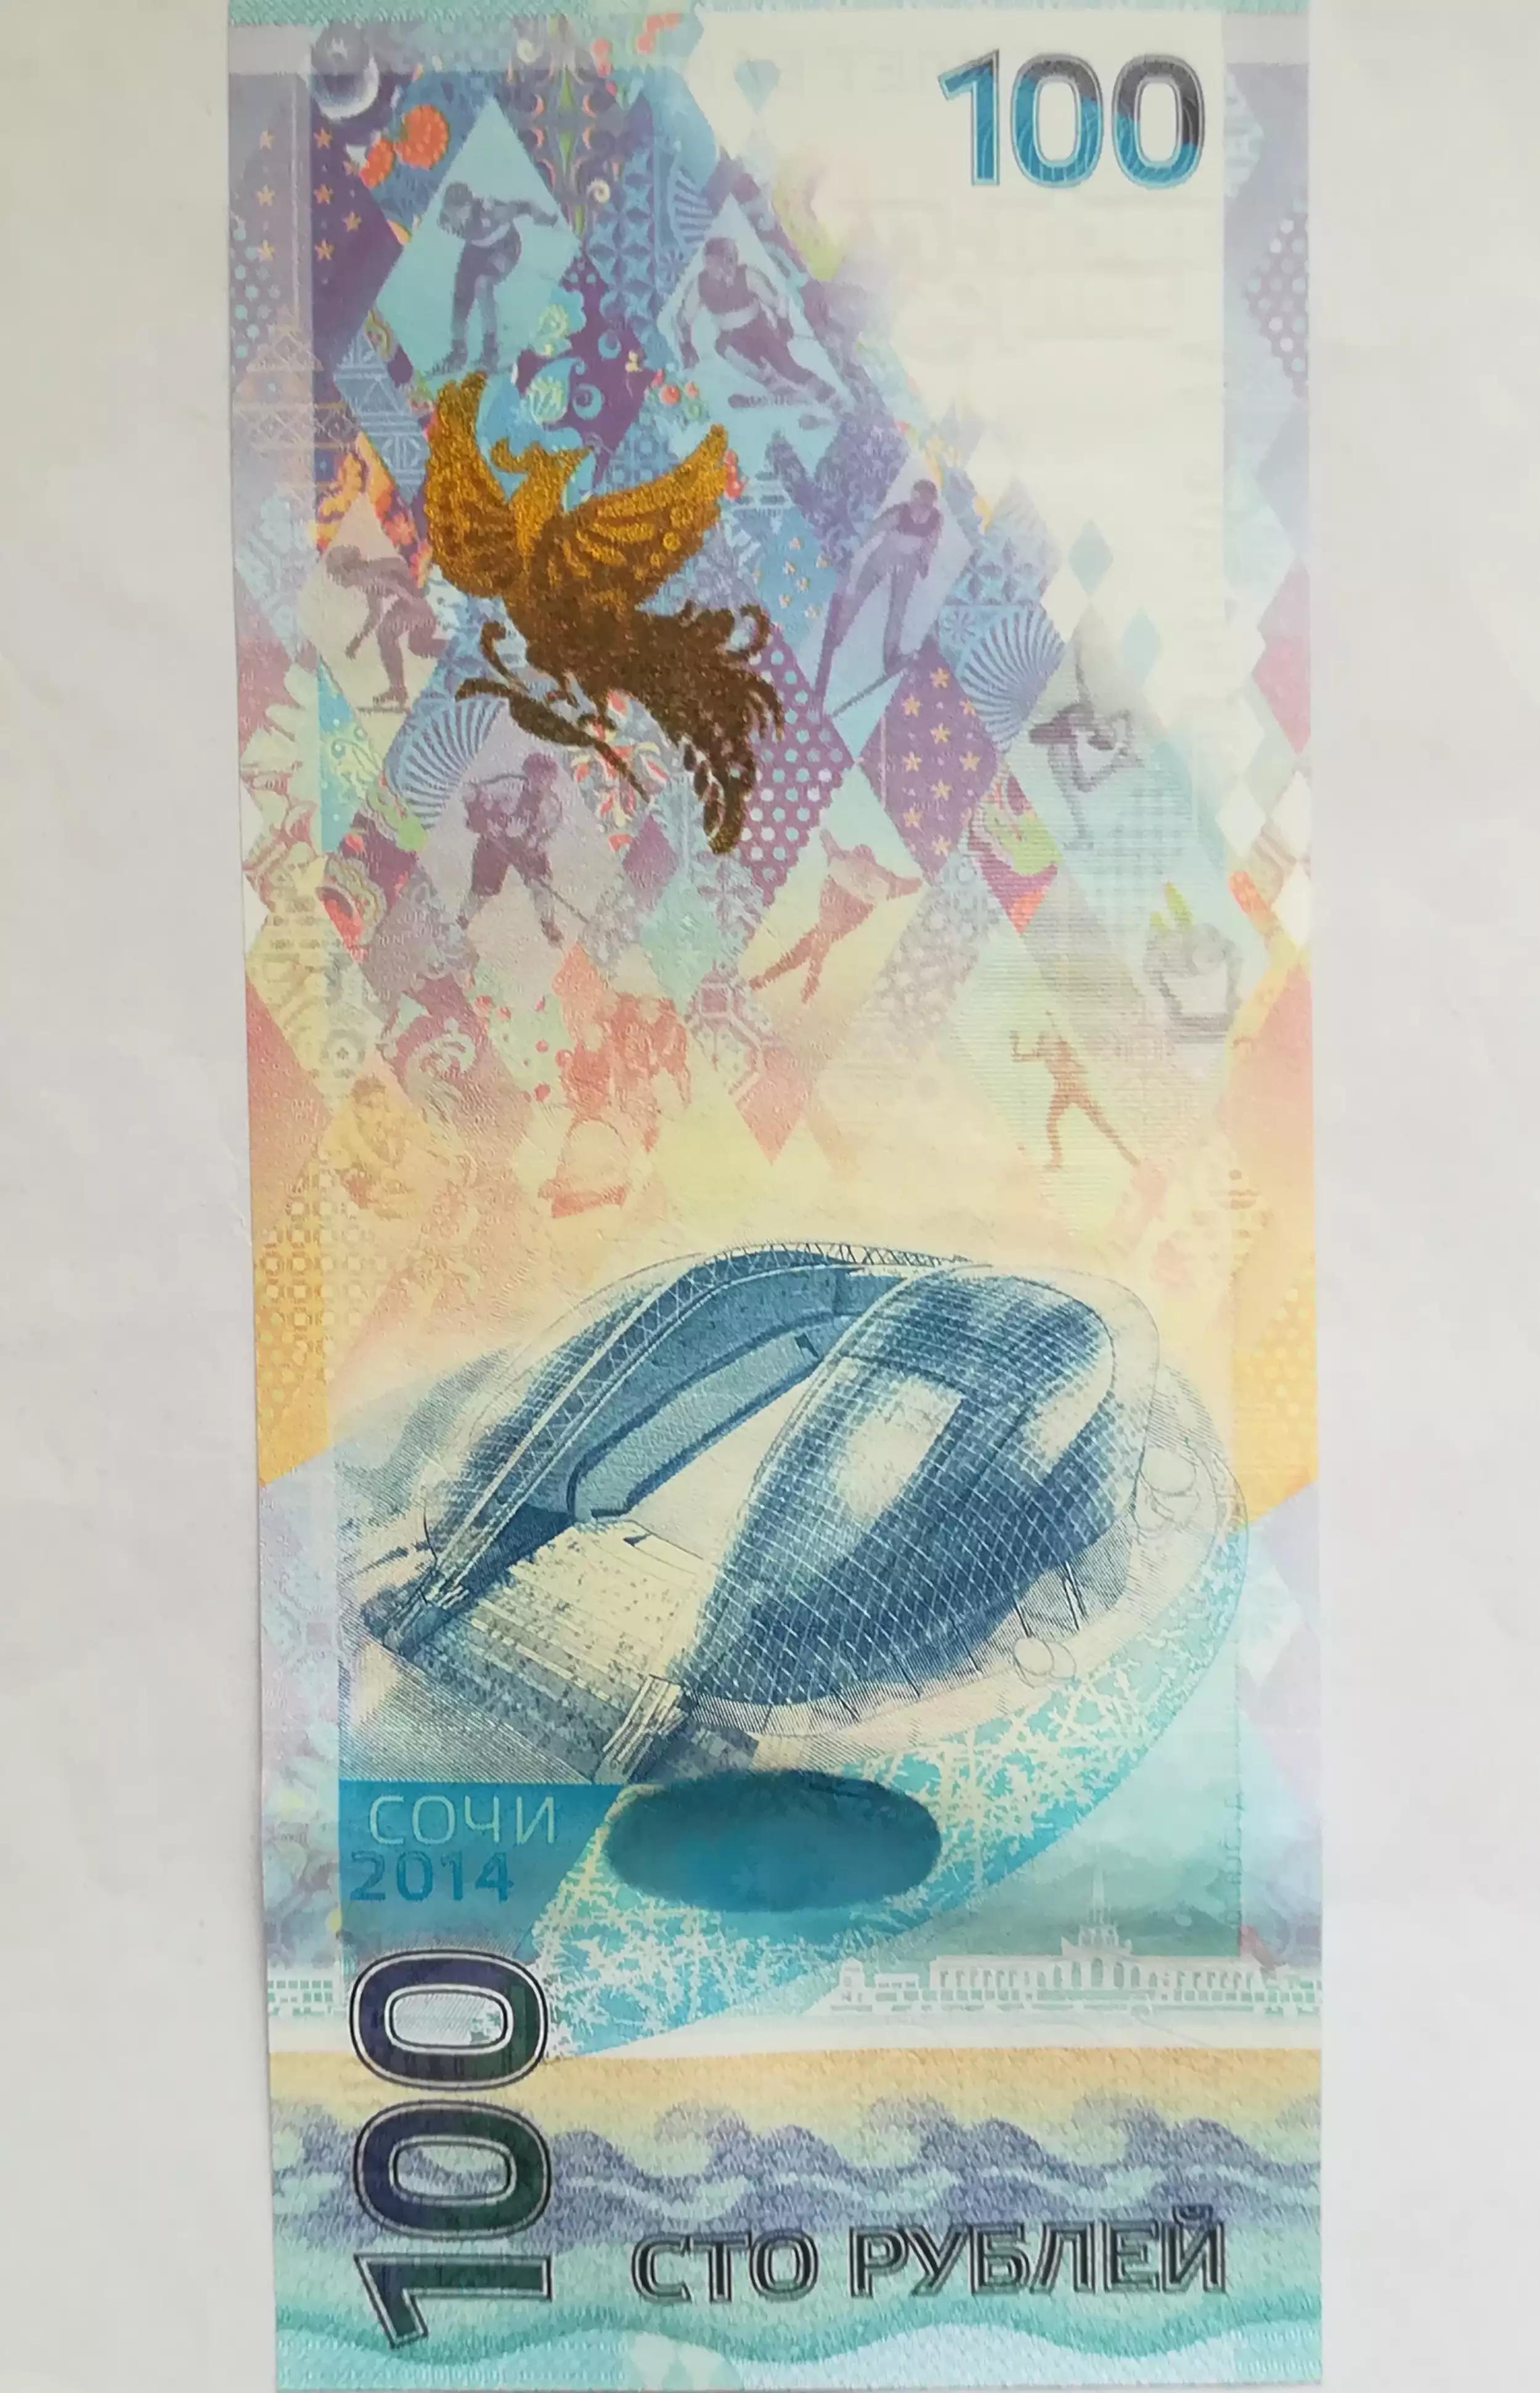 2014索契冬奥会纪念钞